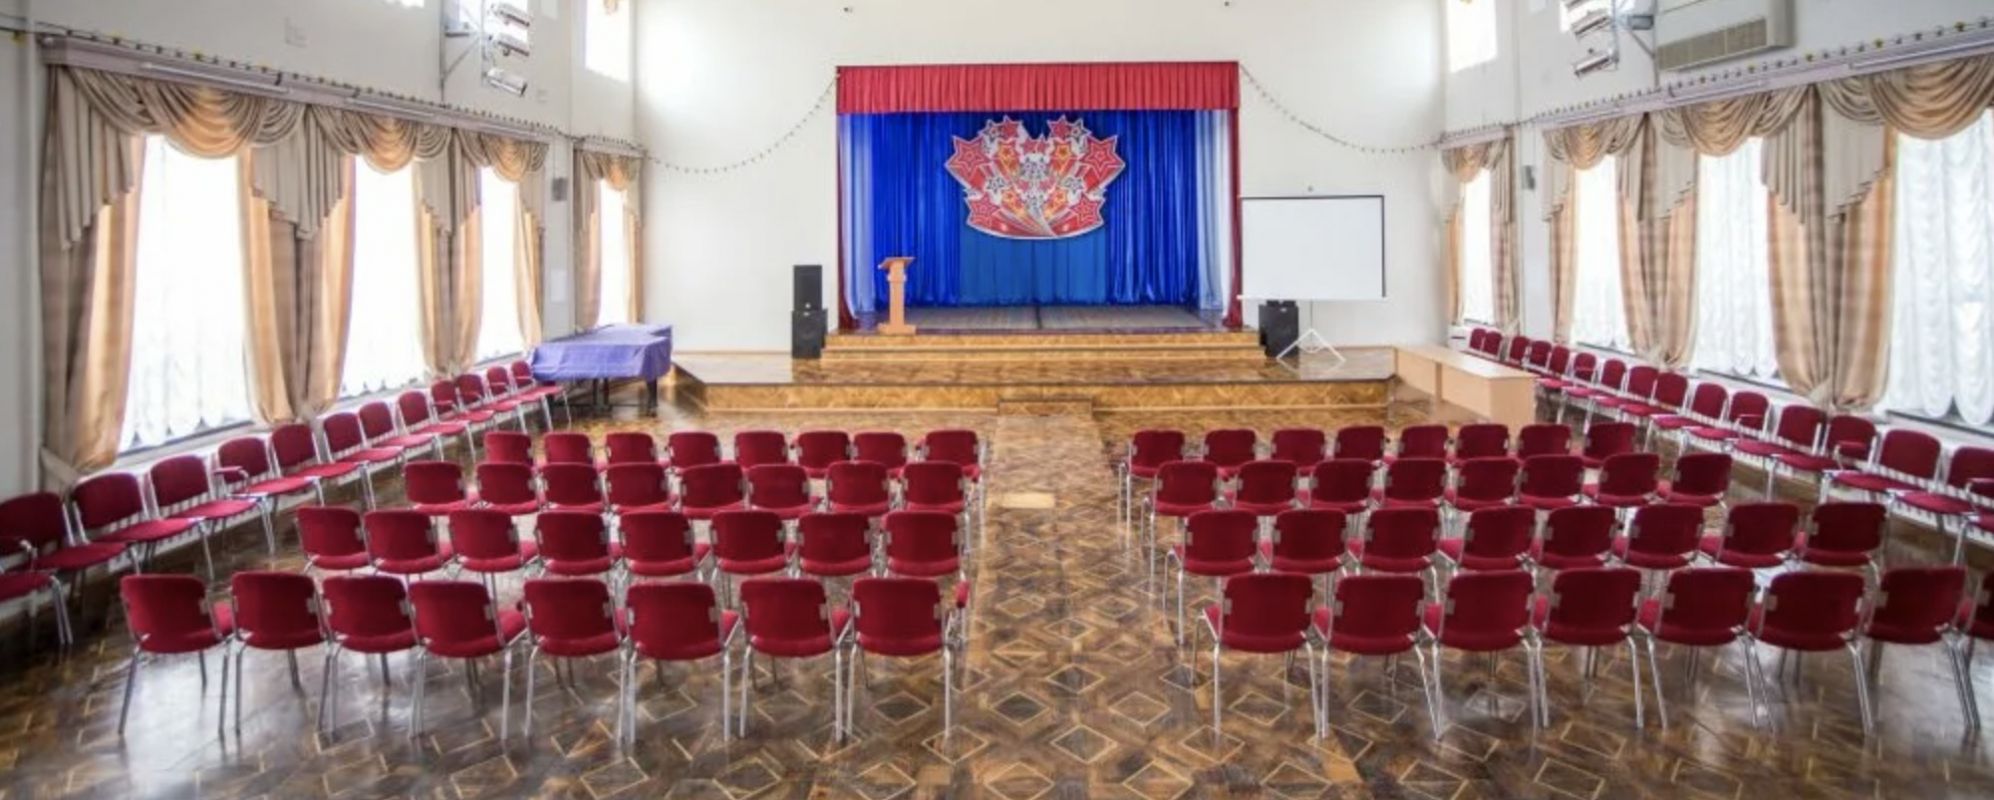 Фотографии концертного зала Малый зал ДК Металлургов